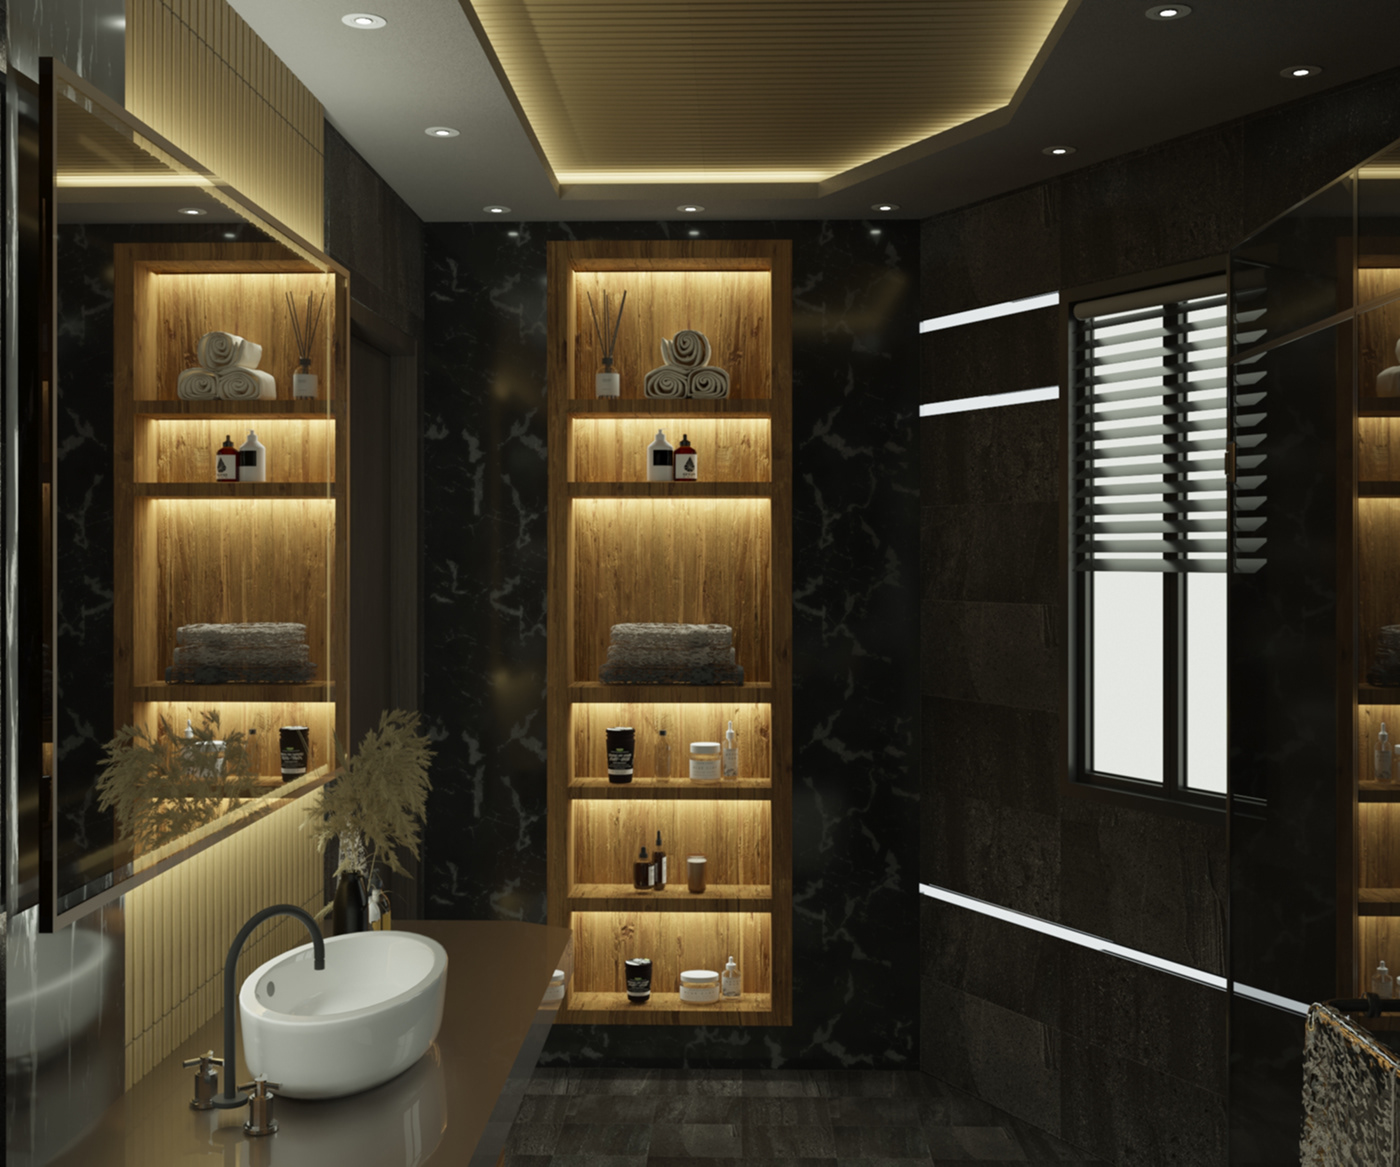 design bathroom Interior visualization 3ds max corona architecture AutoCAD Render